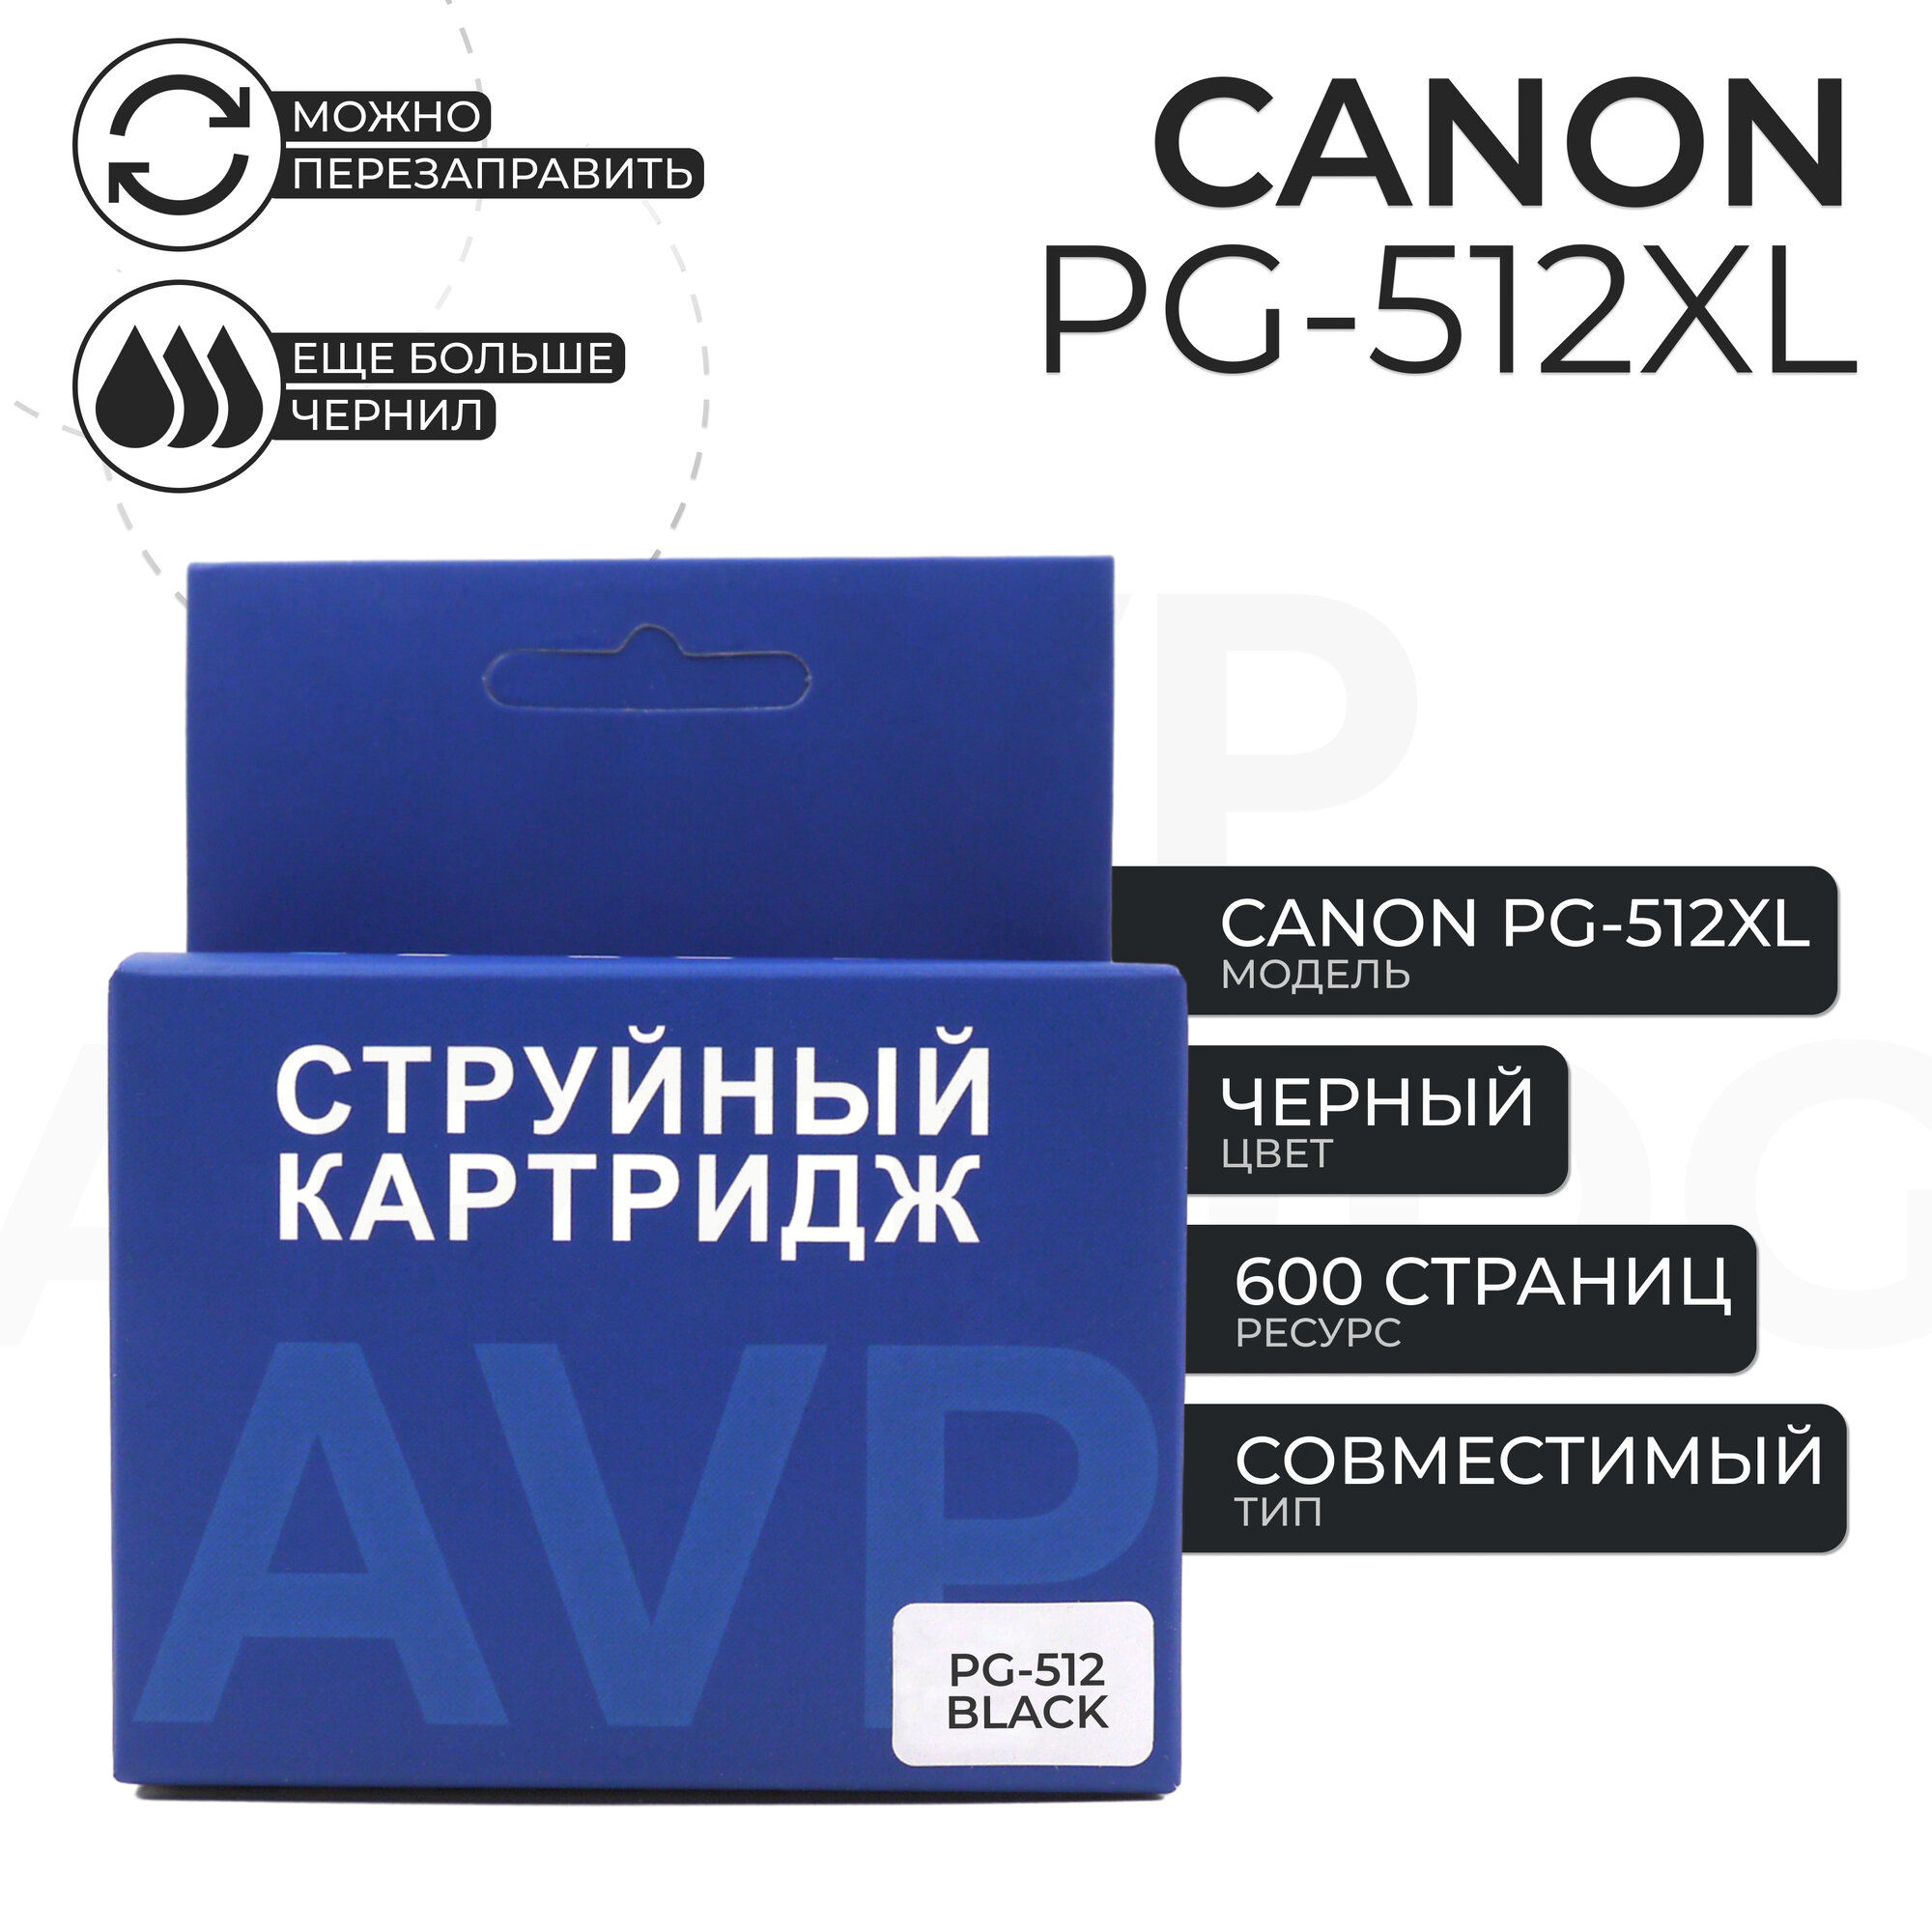 Картридж AVP PG-512 XL для принтера Canon, черный